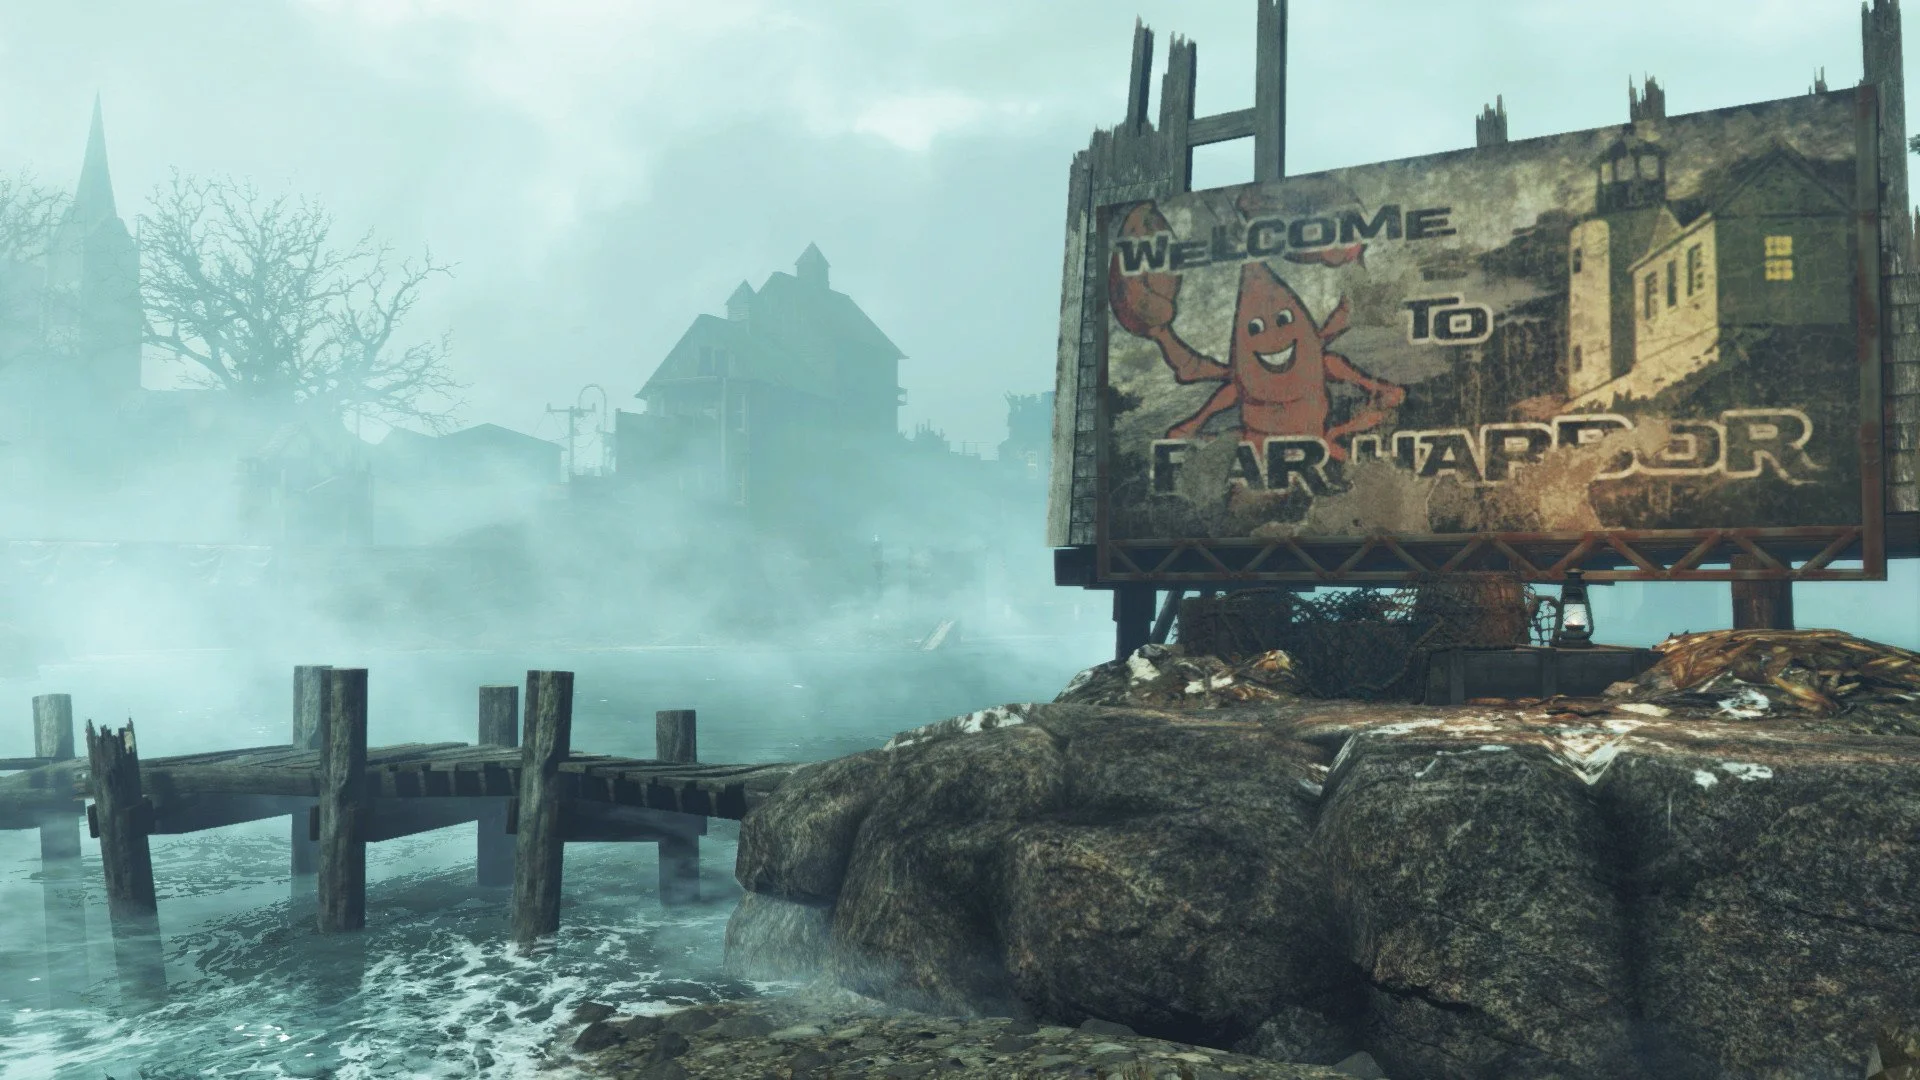 Тестеры нахваливают дополнение Far Harbor для Fallout 4 - фото 2